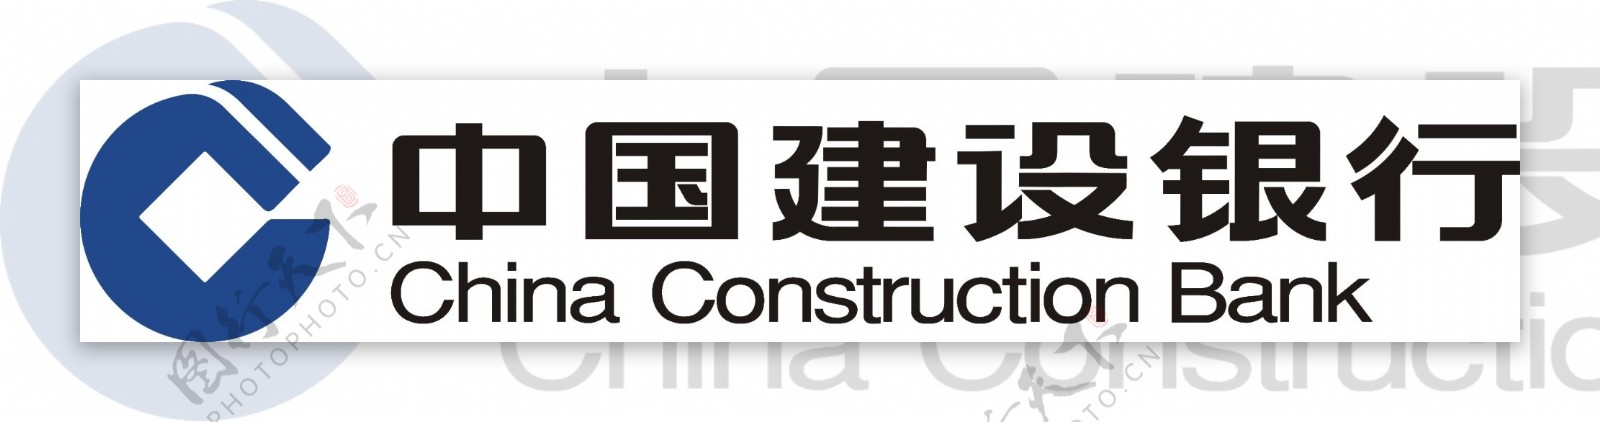 建设银行logo125